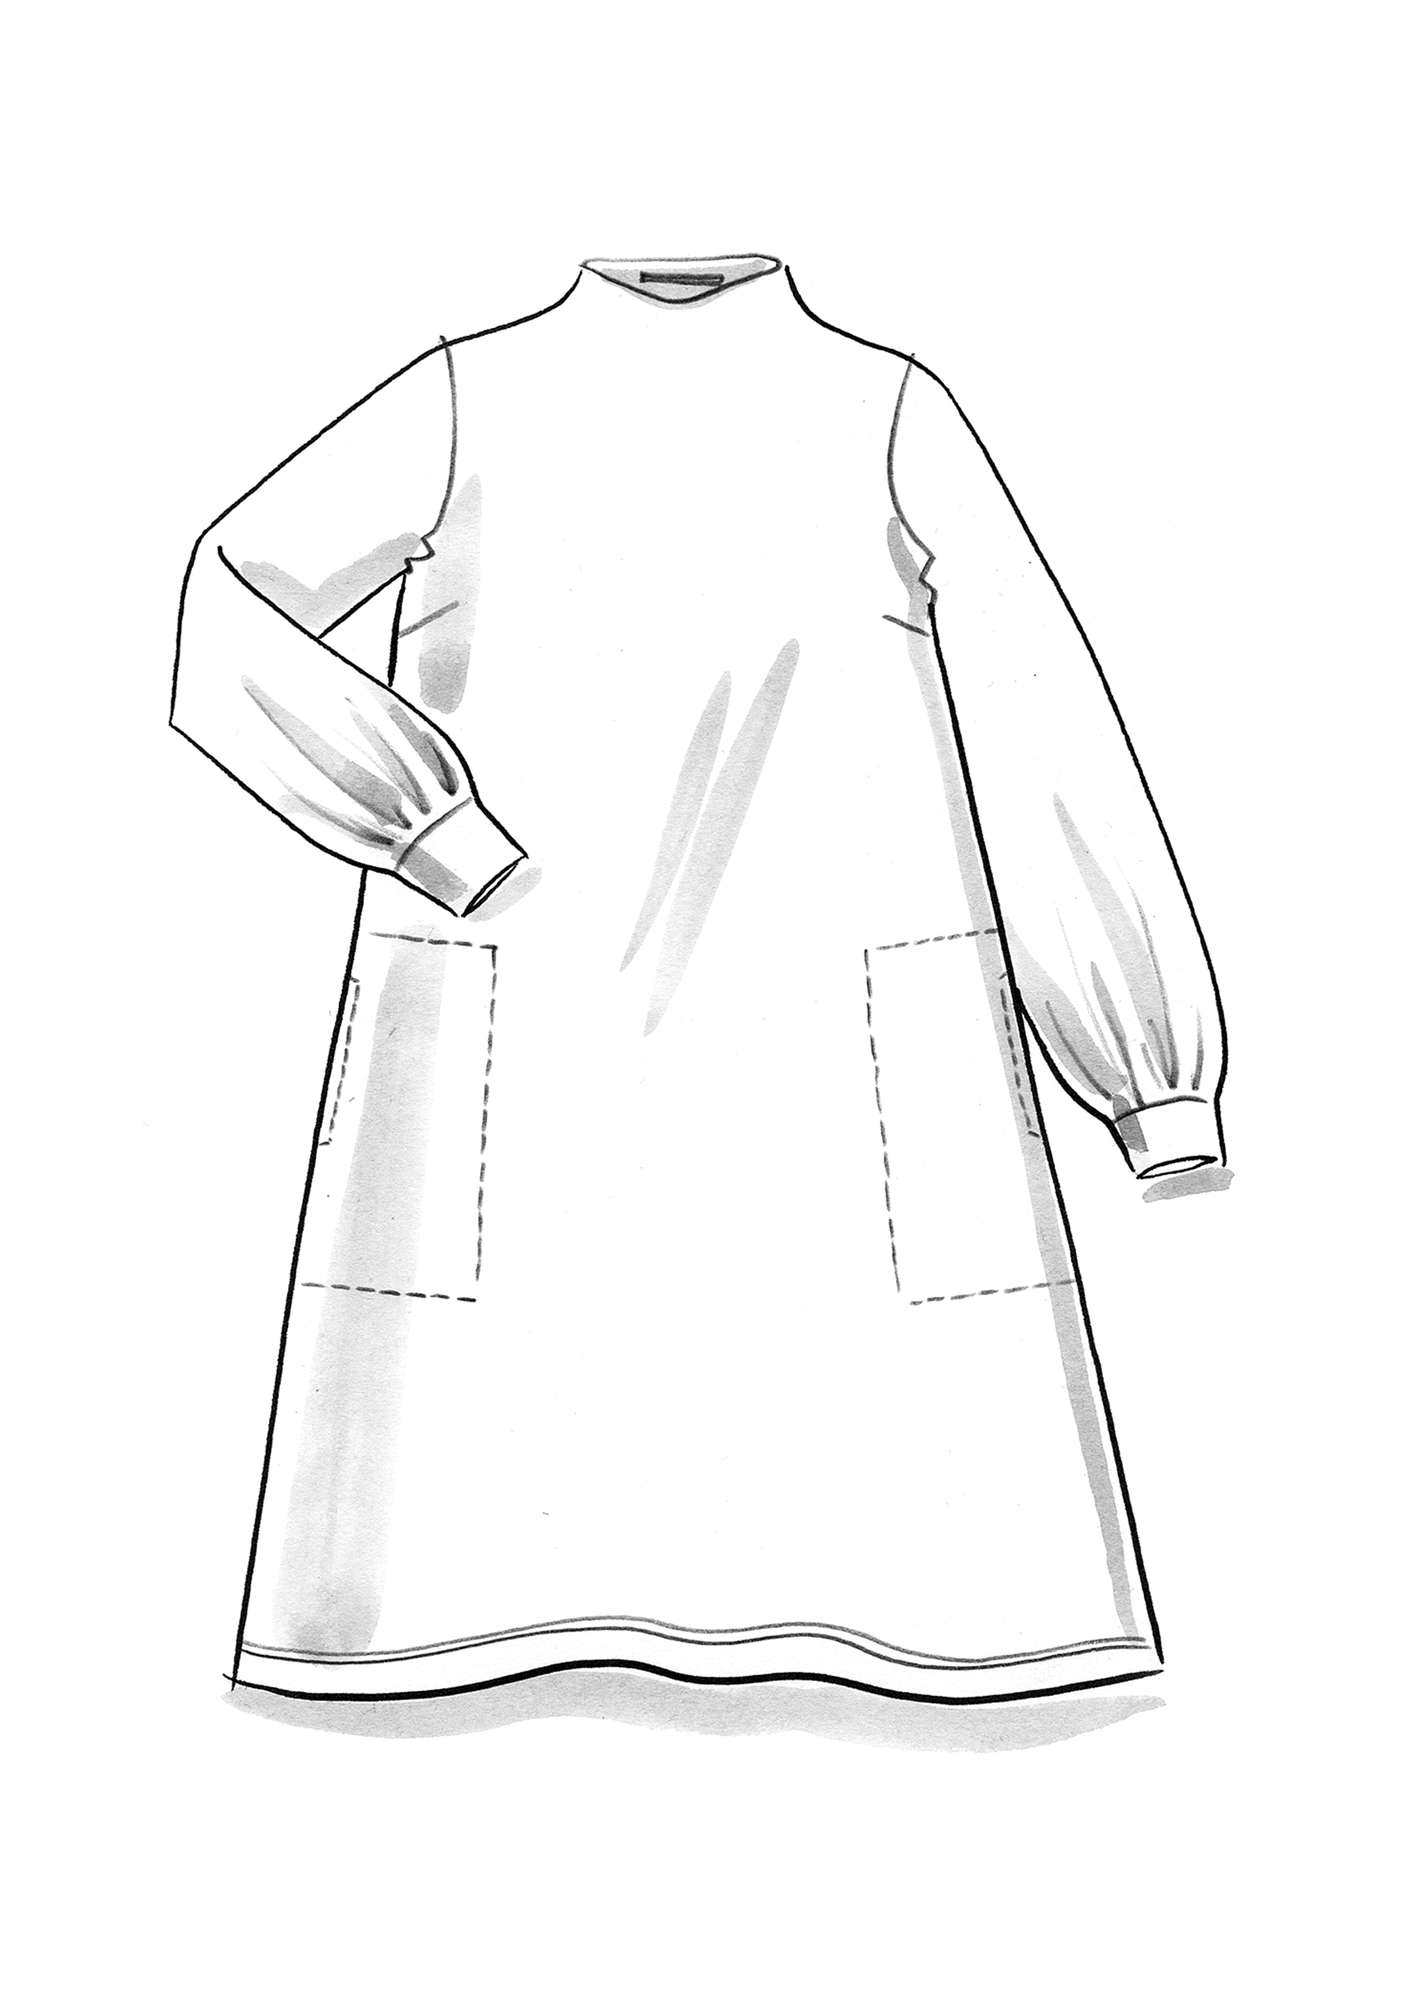 Tricot jurk  Bladmynta  van biologisch katoen/modal/elastaan kerrie